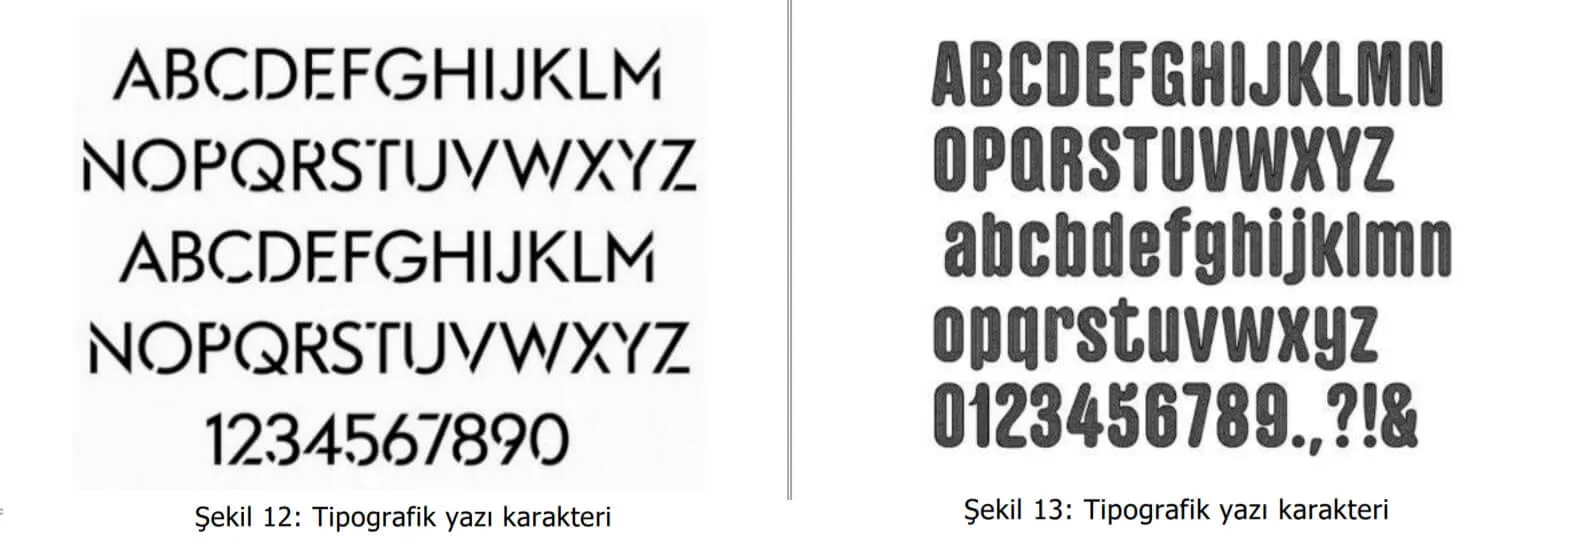 tipografik yazı karakter örnekleri-sakarya web tasarım